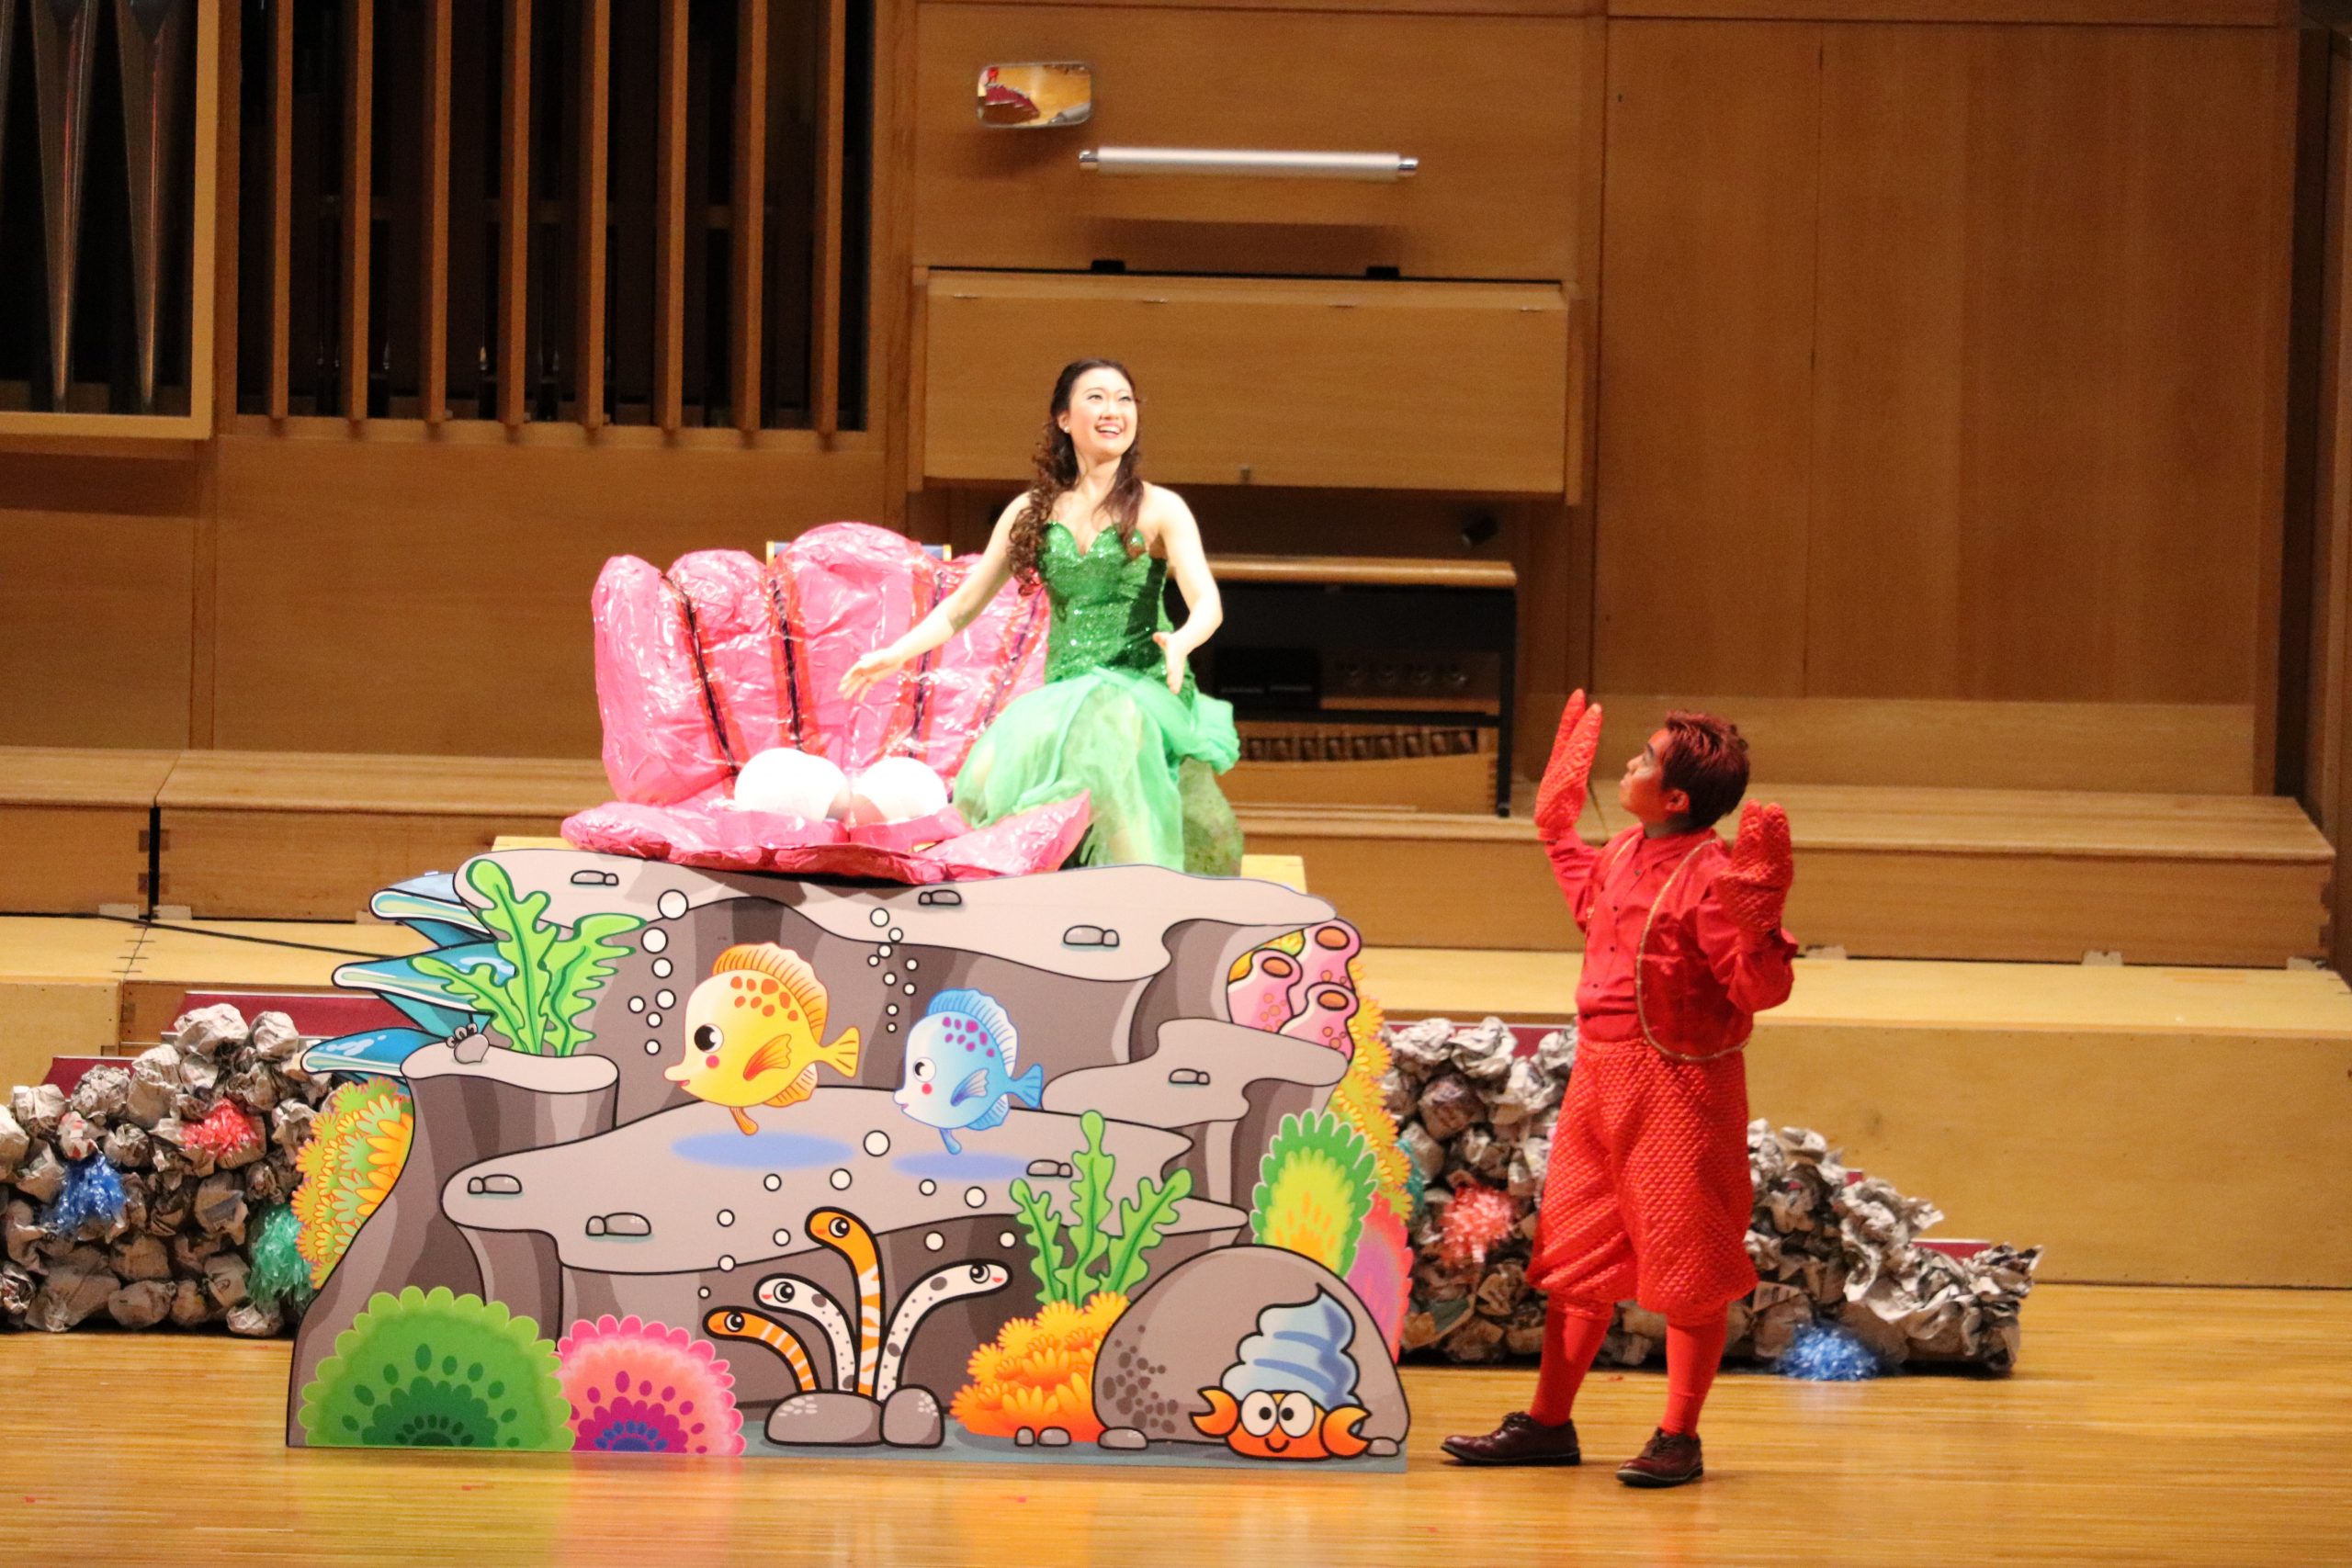 【受付終了】エリザベト音楽大学こどものためのミニオペラ「人魚姫と海のなかまたち」